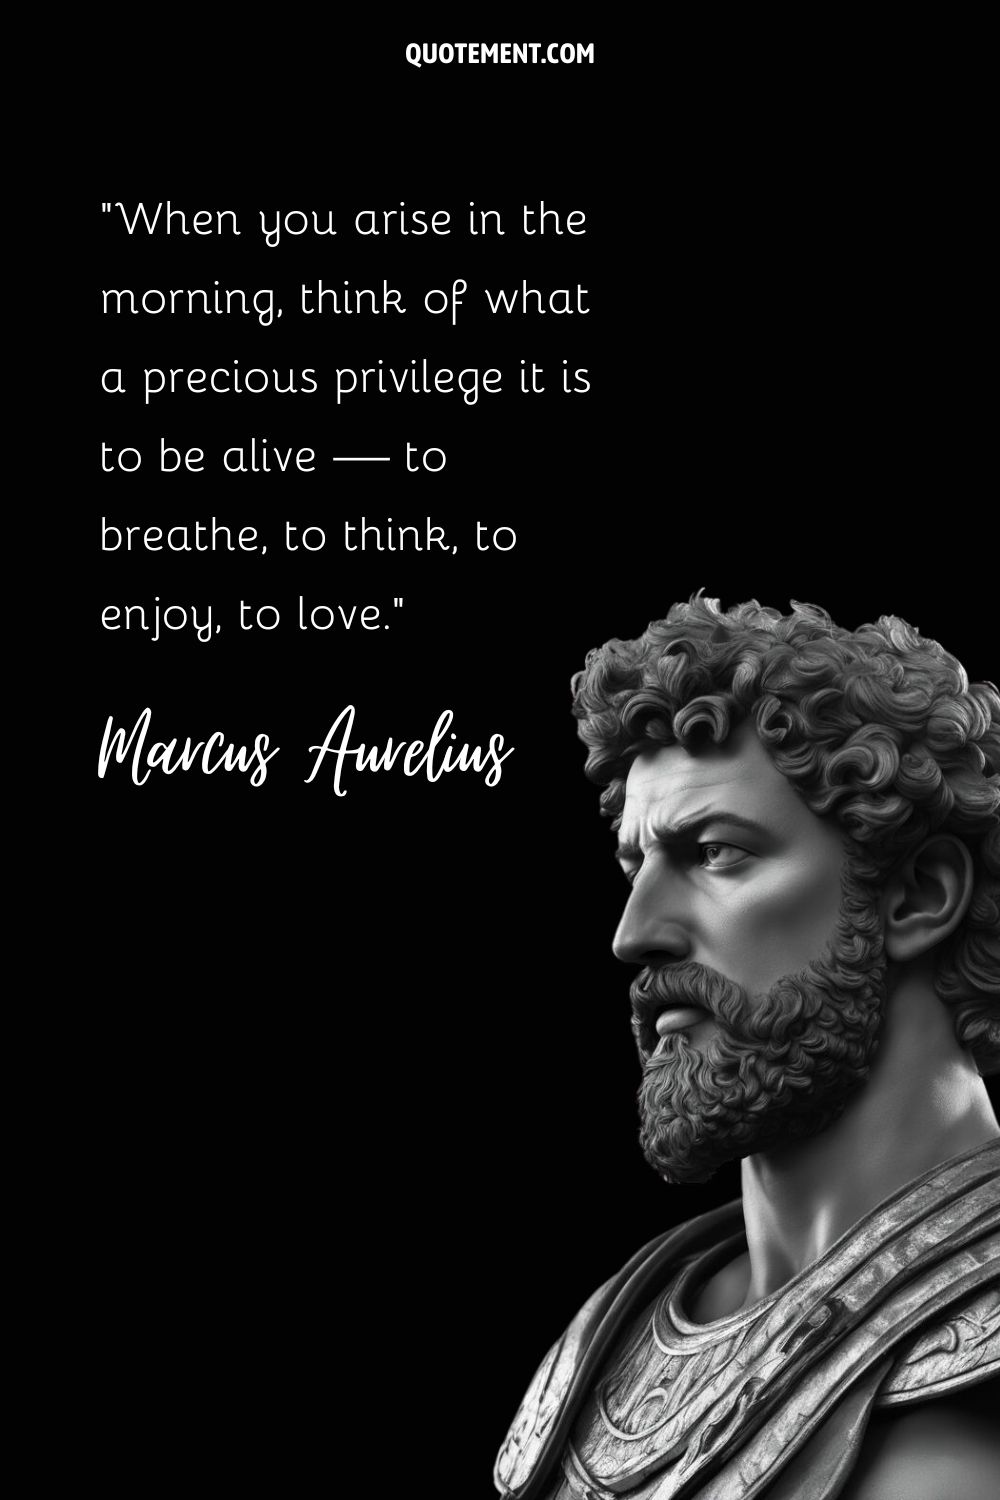 Majestic Marcus Aurelius in stoic repose.
